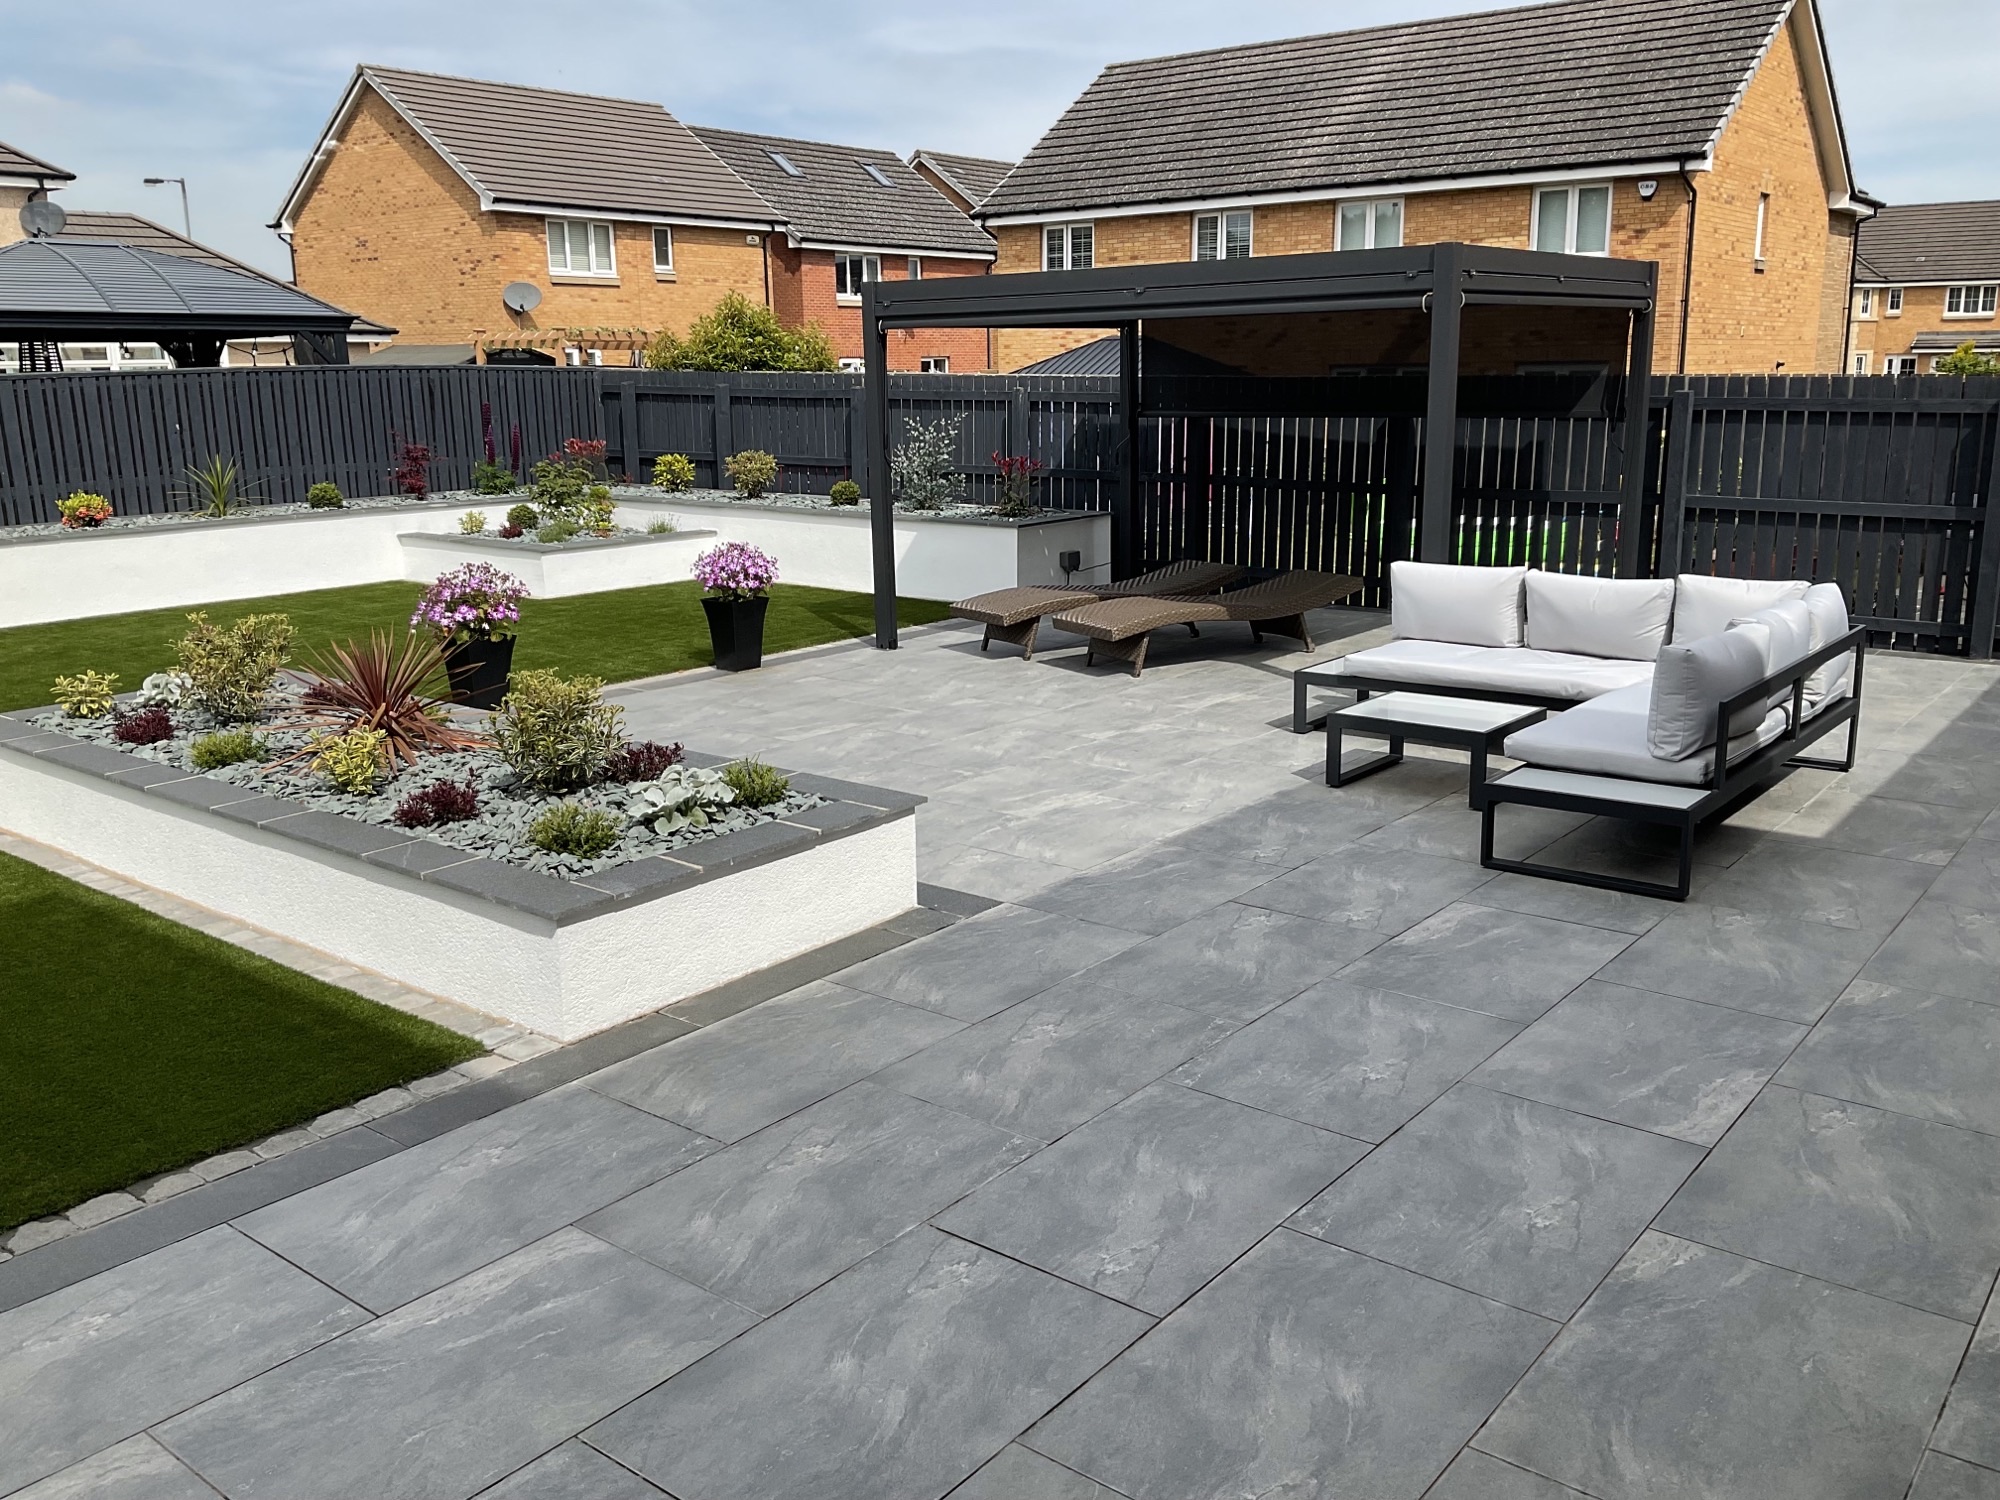 Affordable Garden Design Services UK